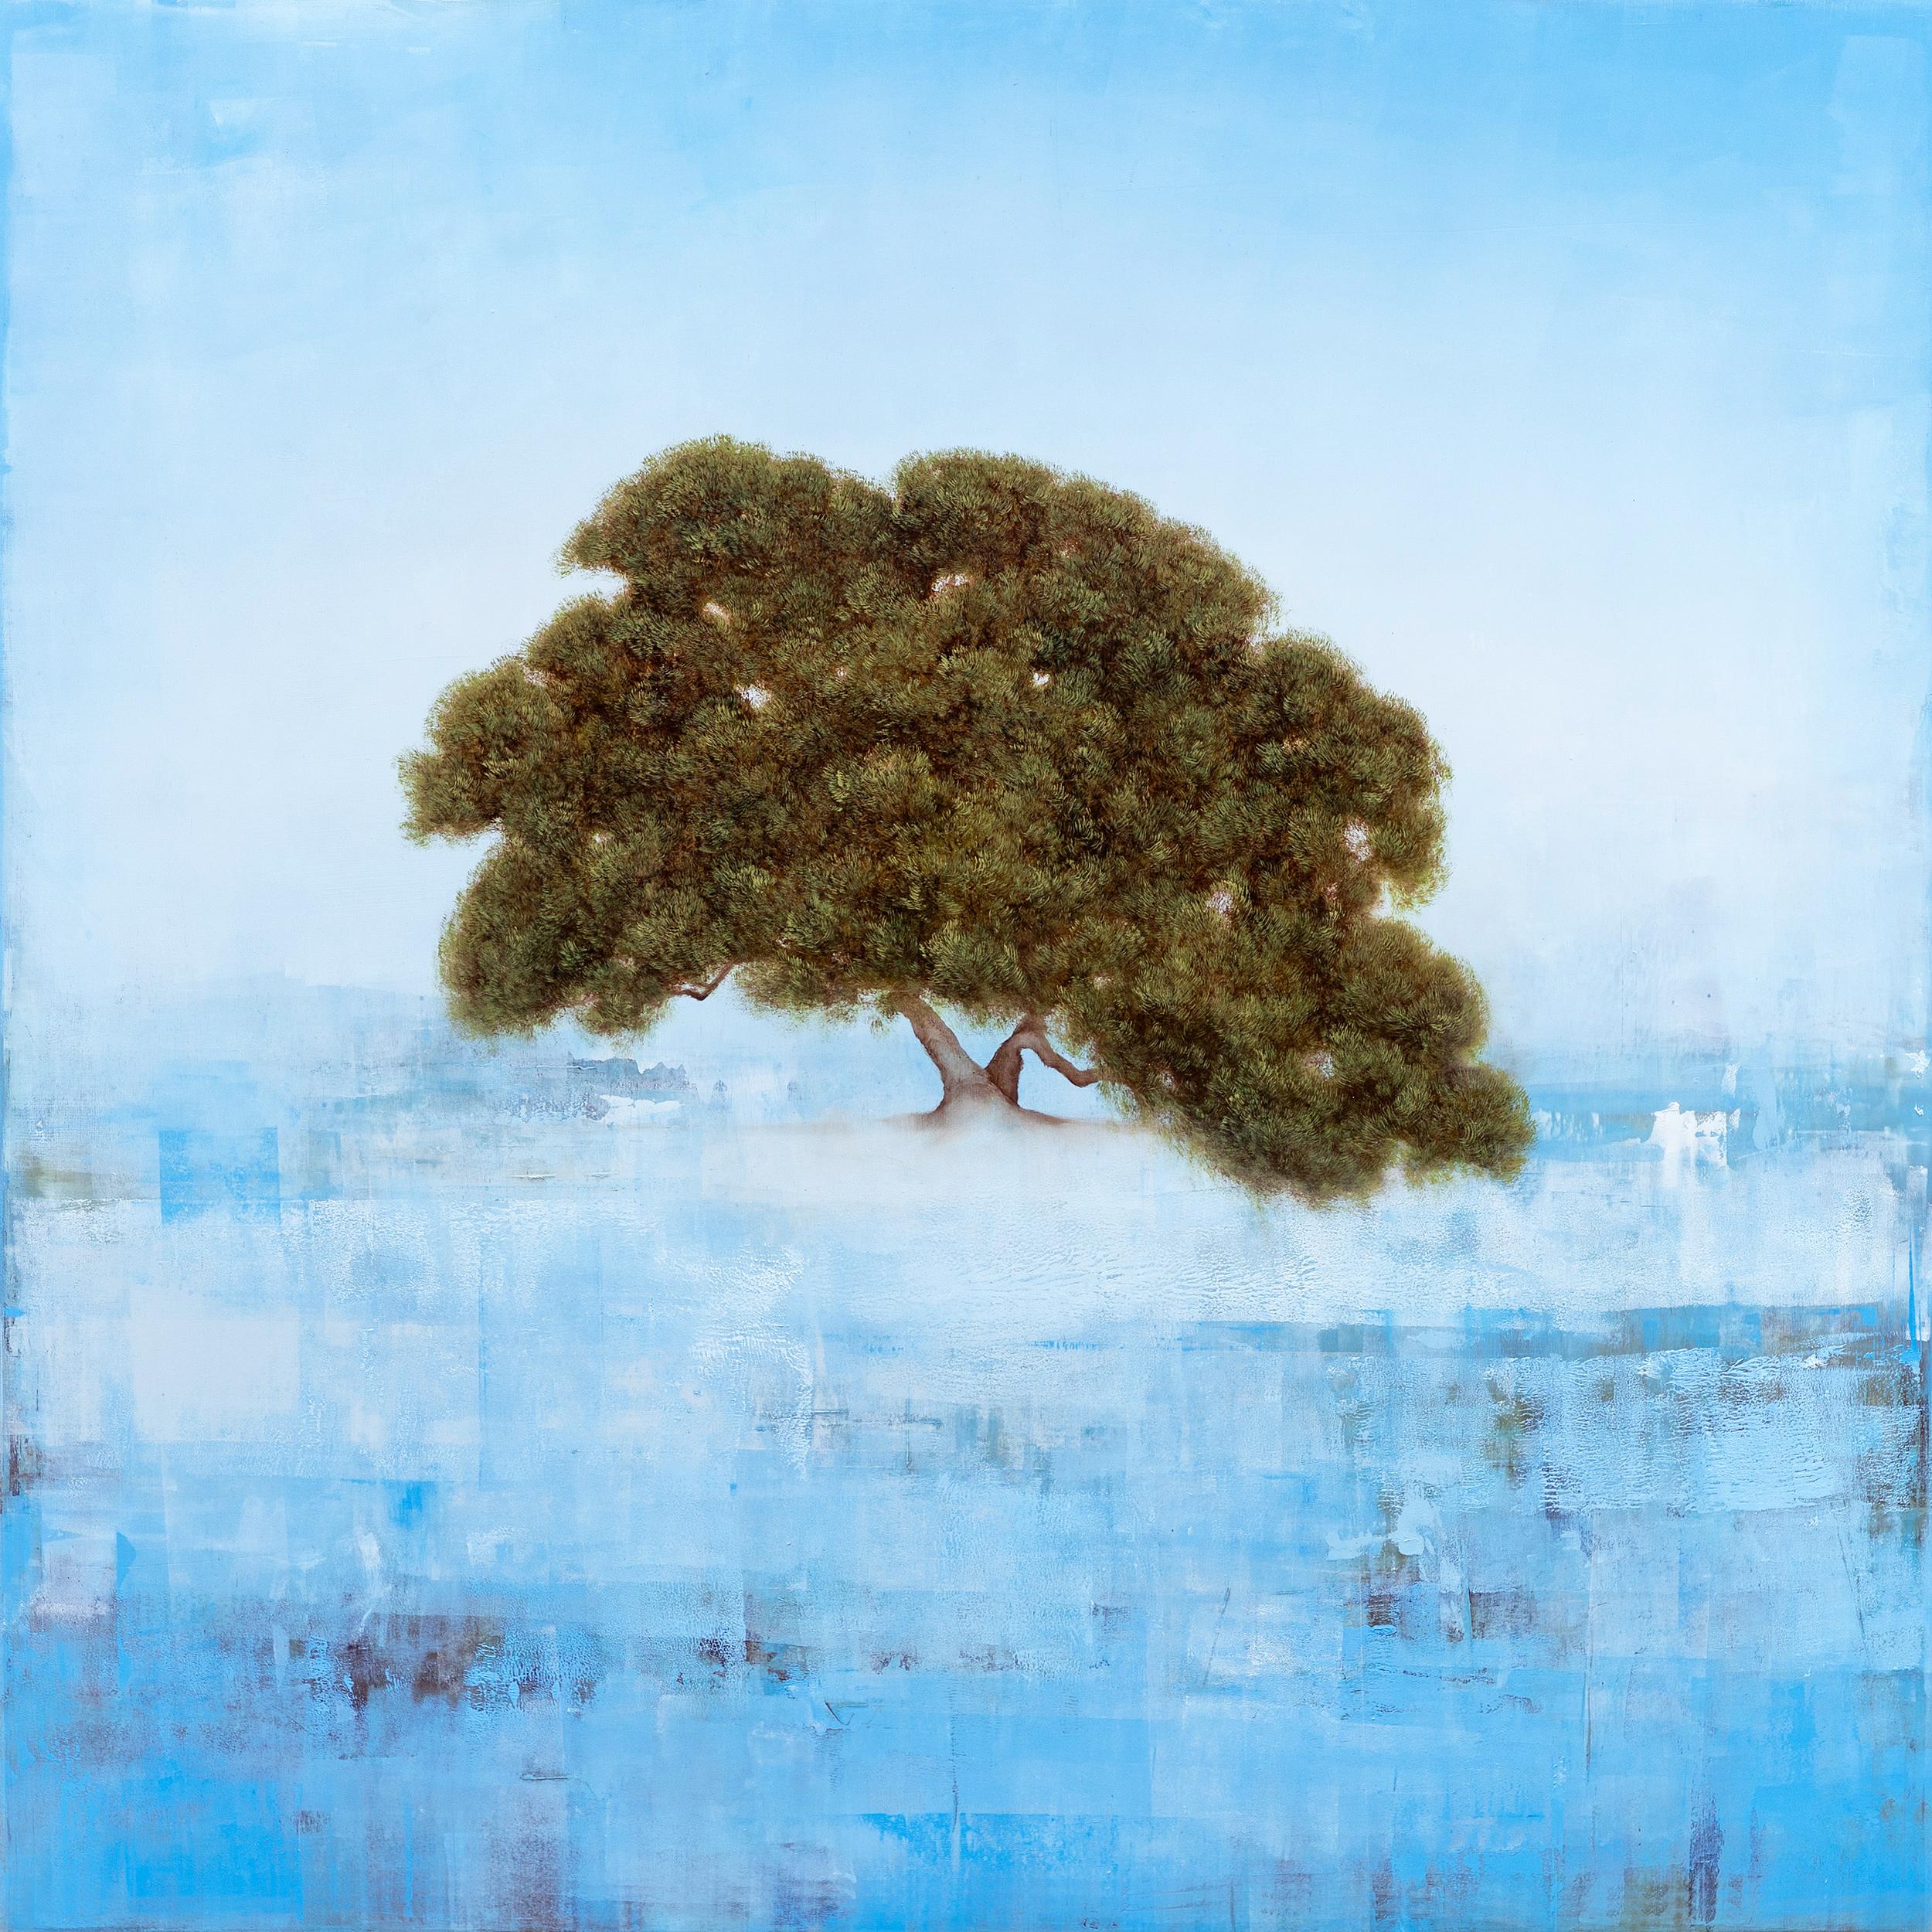 Timeless Oak von Jessica Pisano, Zeitgenössisches Baumgemälde in Öl auf Leinwand